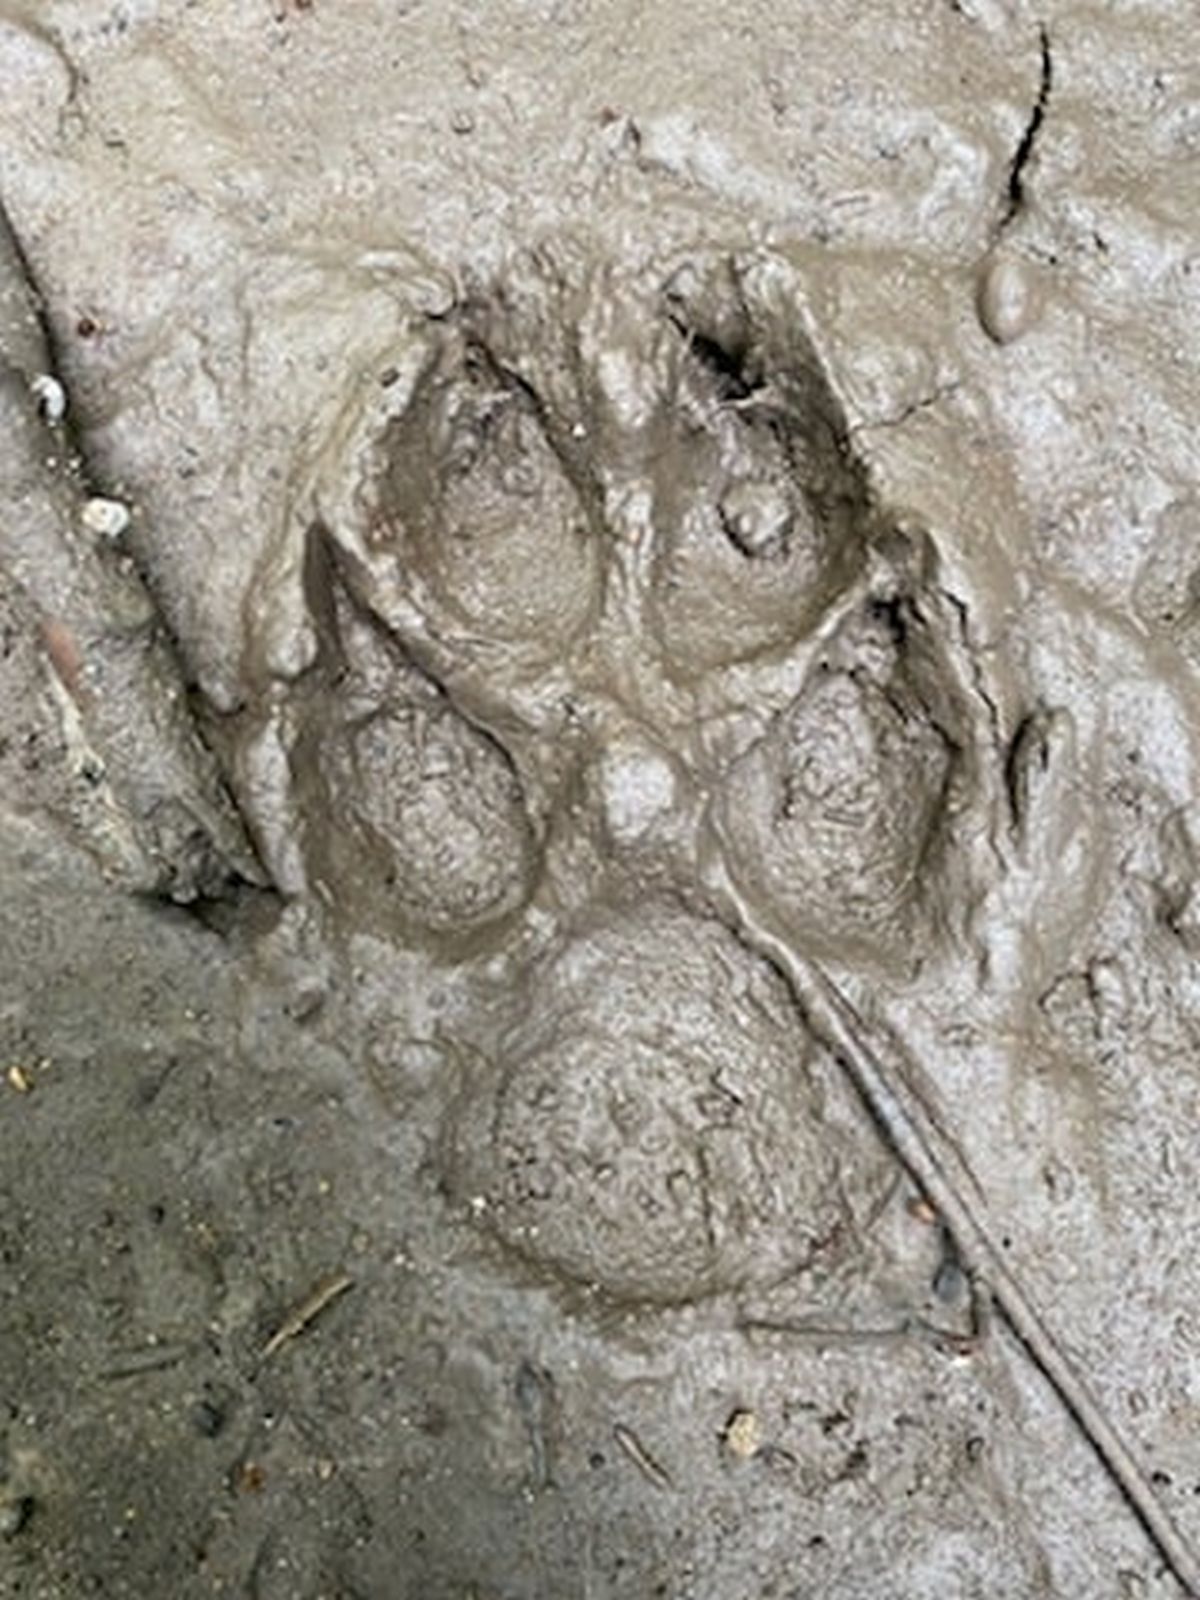 Wilk zawędrował do lubelskiego lasu Dąbrowa? Leśnicy wskazują, że jest to możliwe (foto)